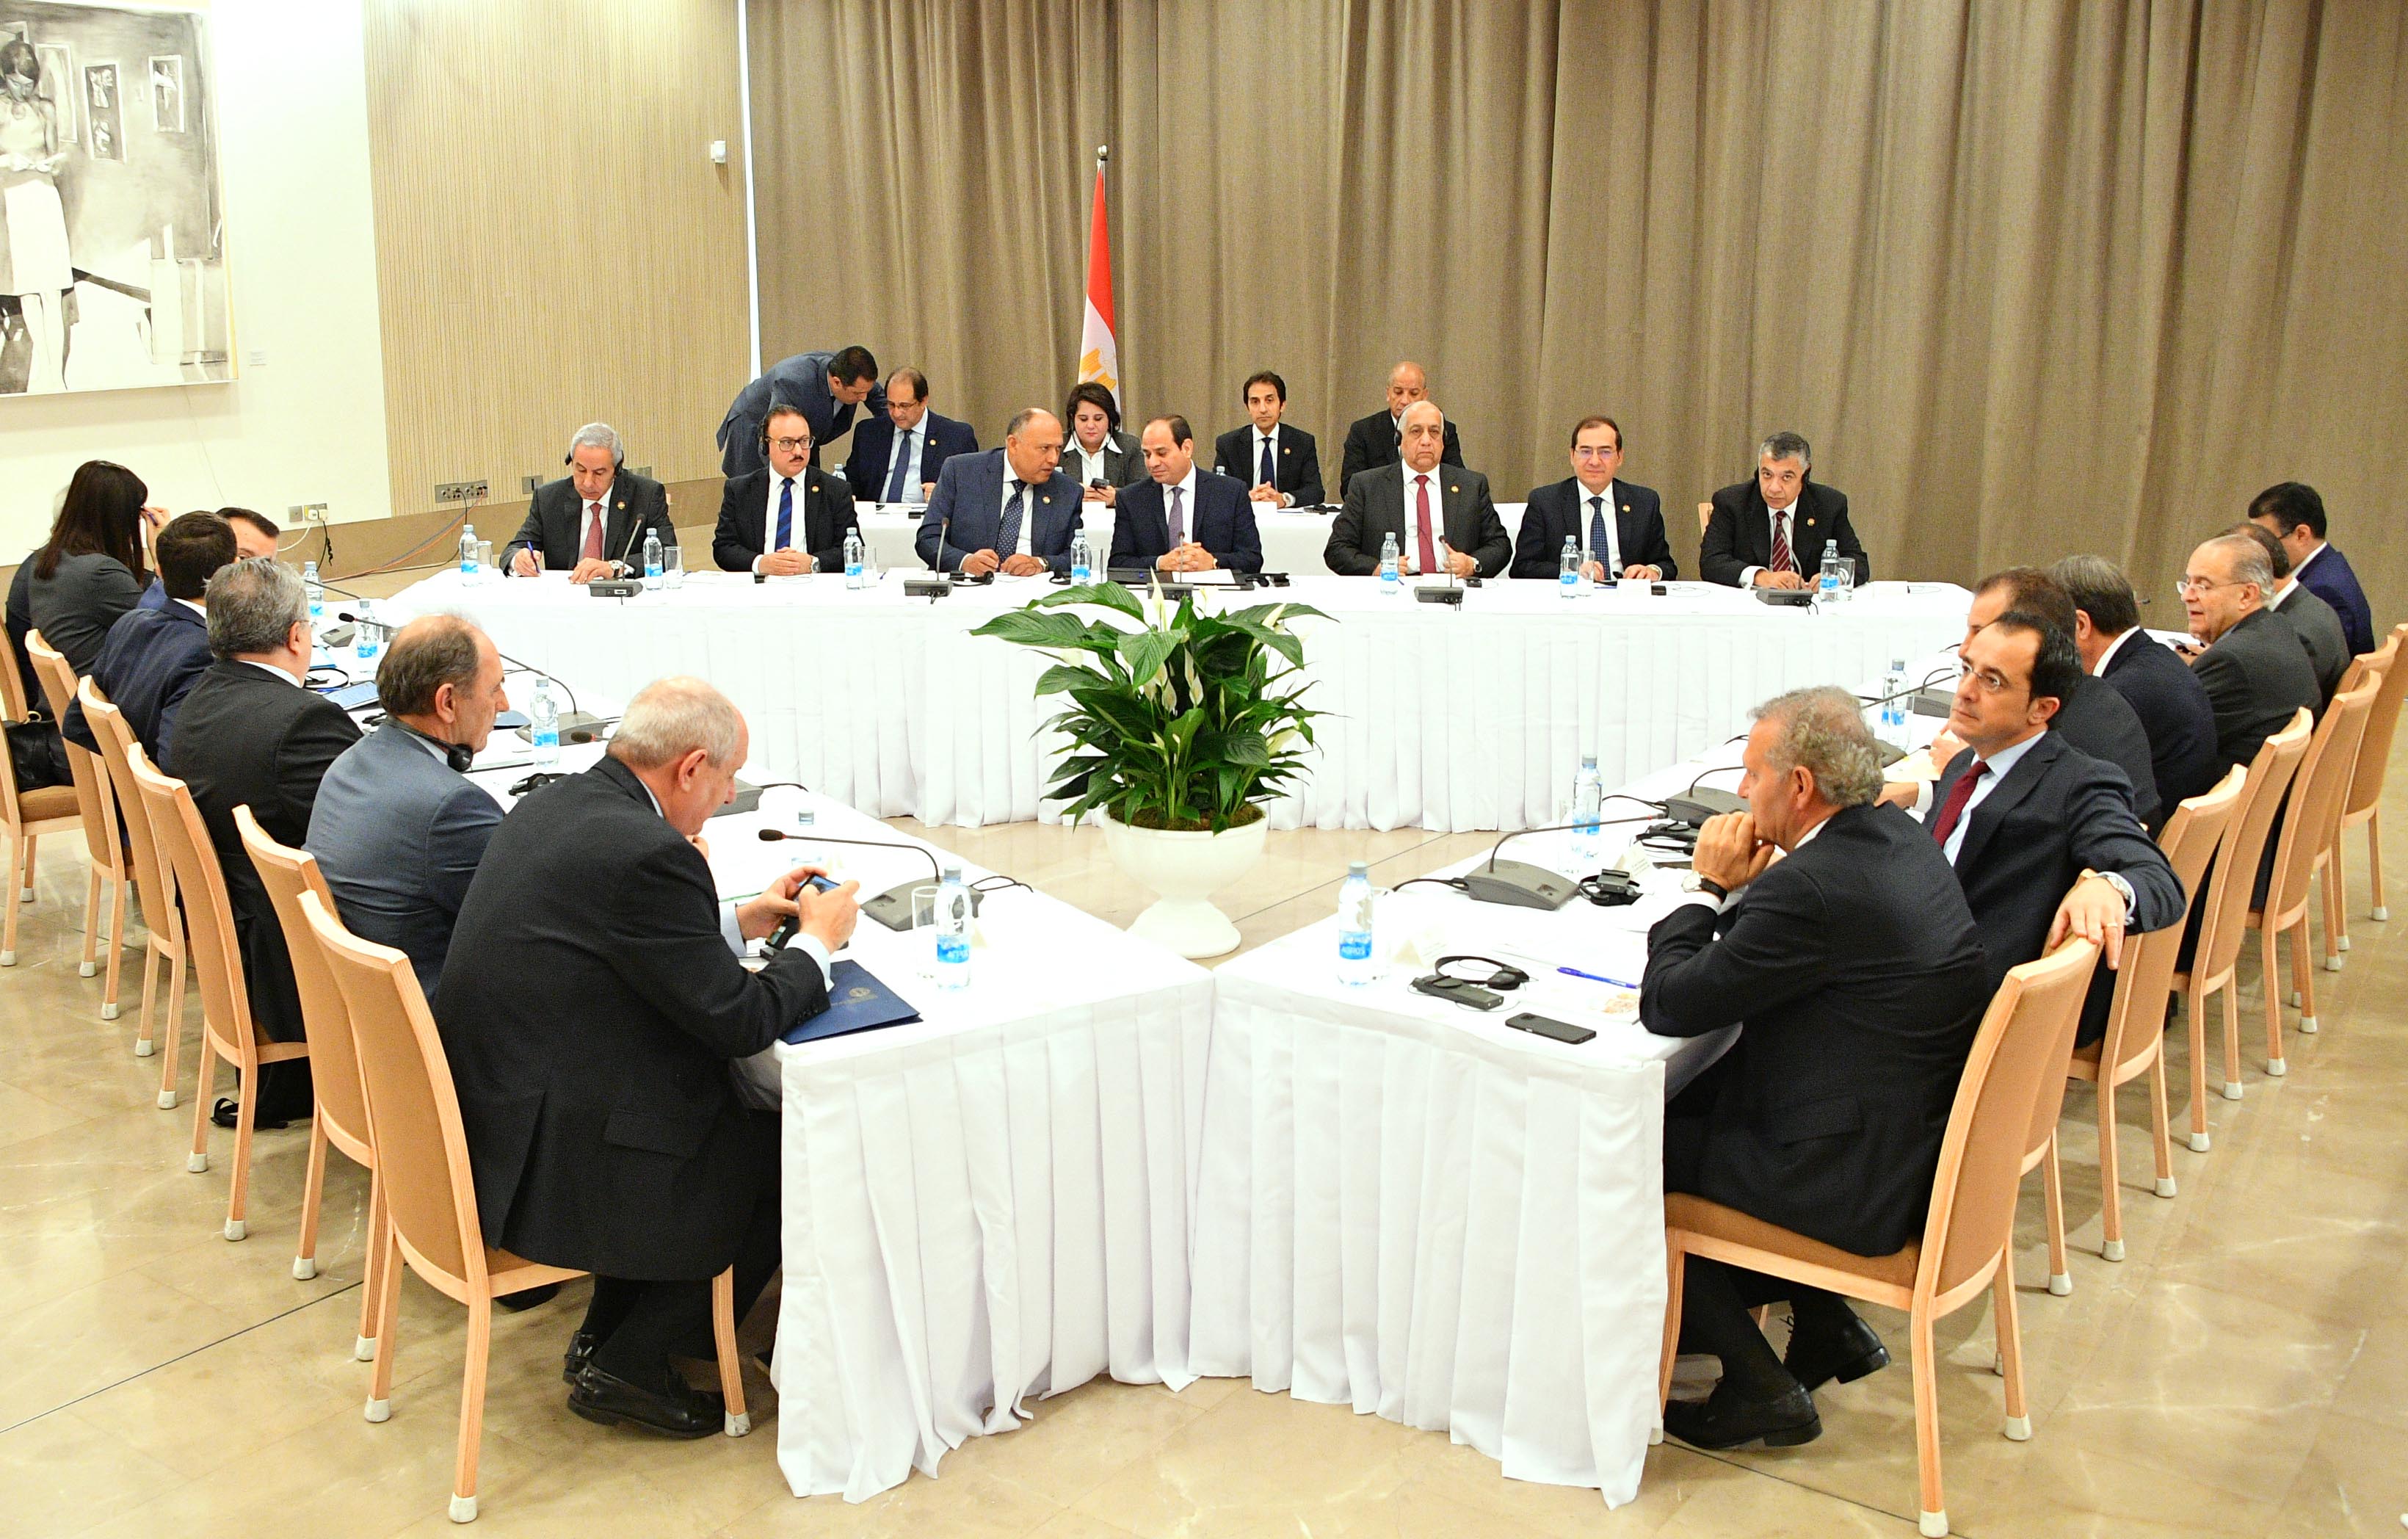 صور المؤتمر الصحفى مع زعماء قبرص واليونان (6)